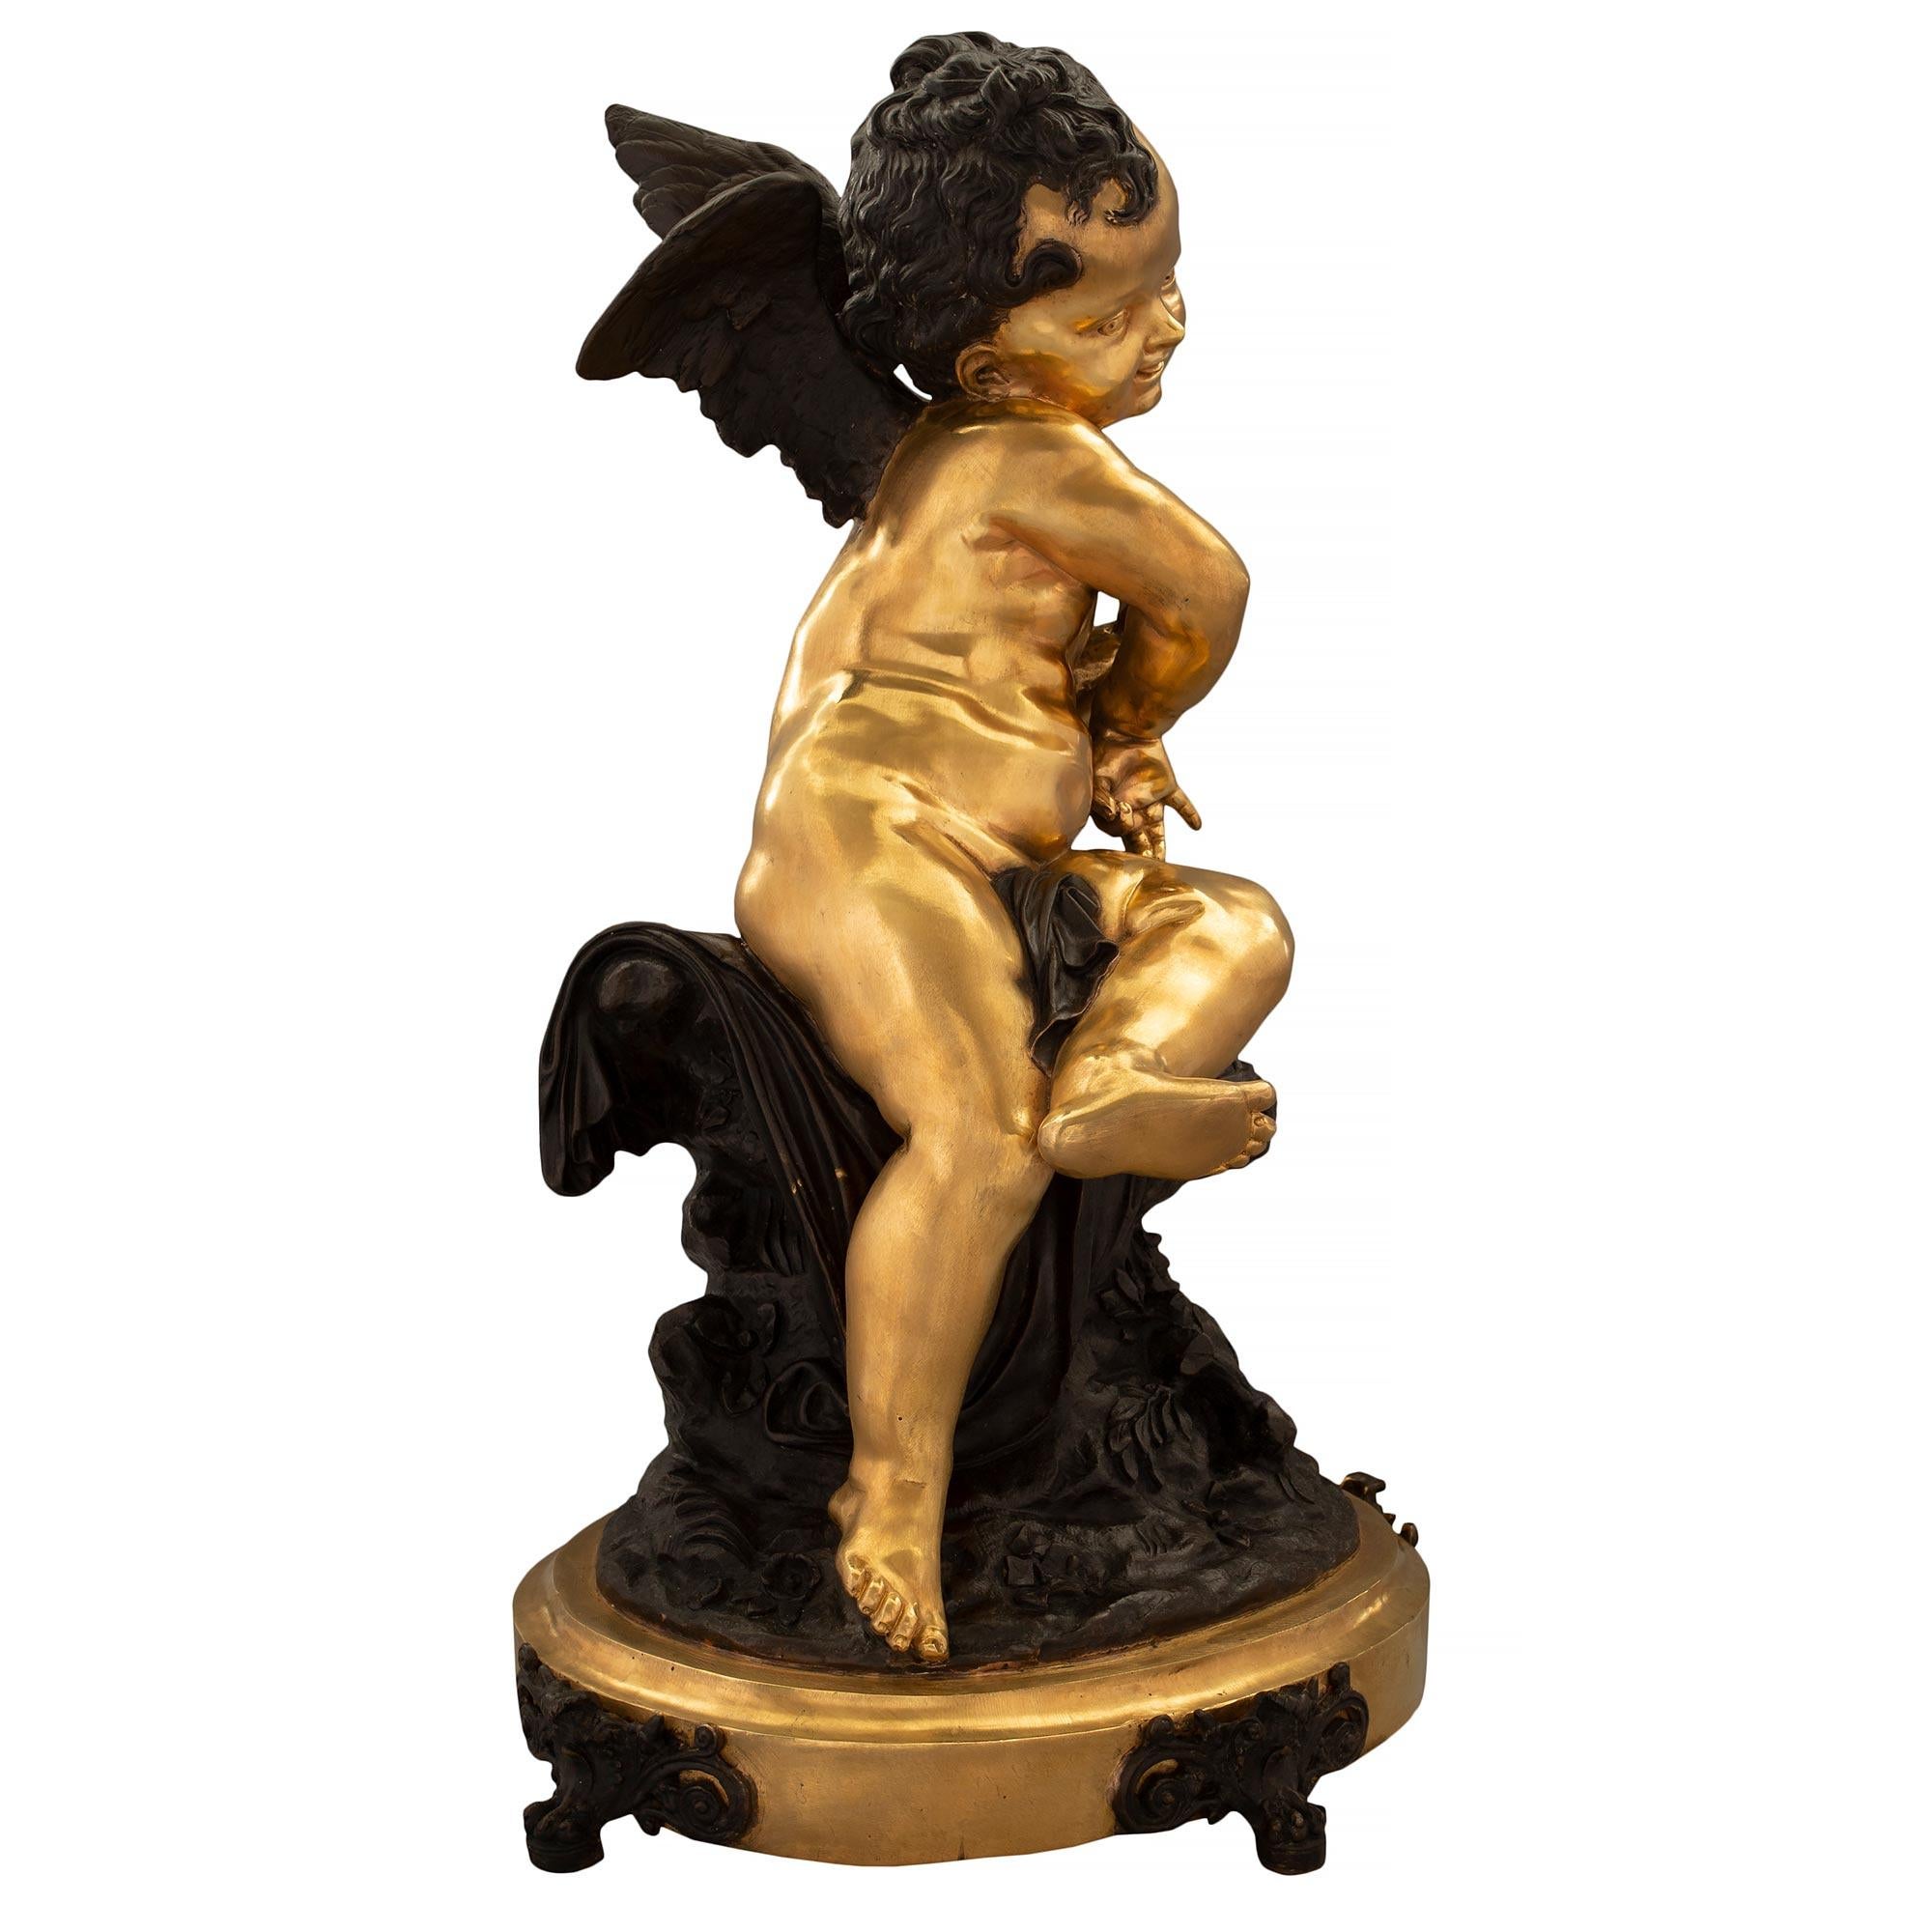 Charmante statue signée en bronze patiné et bronze doré de style Louis XVI du 19ème siècle. La statue est surélevée par une base ovale en bronze doré avec une bordure mouchetée et des pieds très décoratifs en bronze patiné percé à volutes.